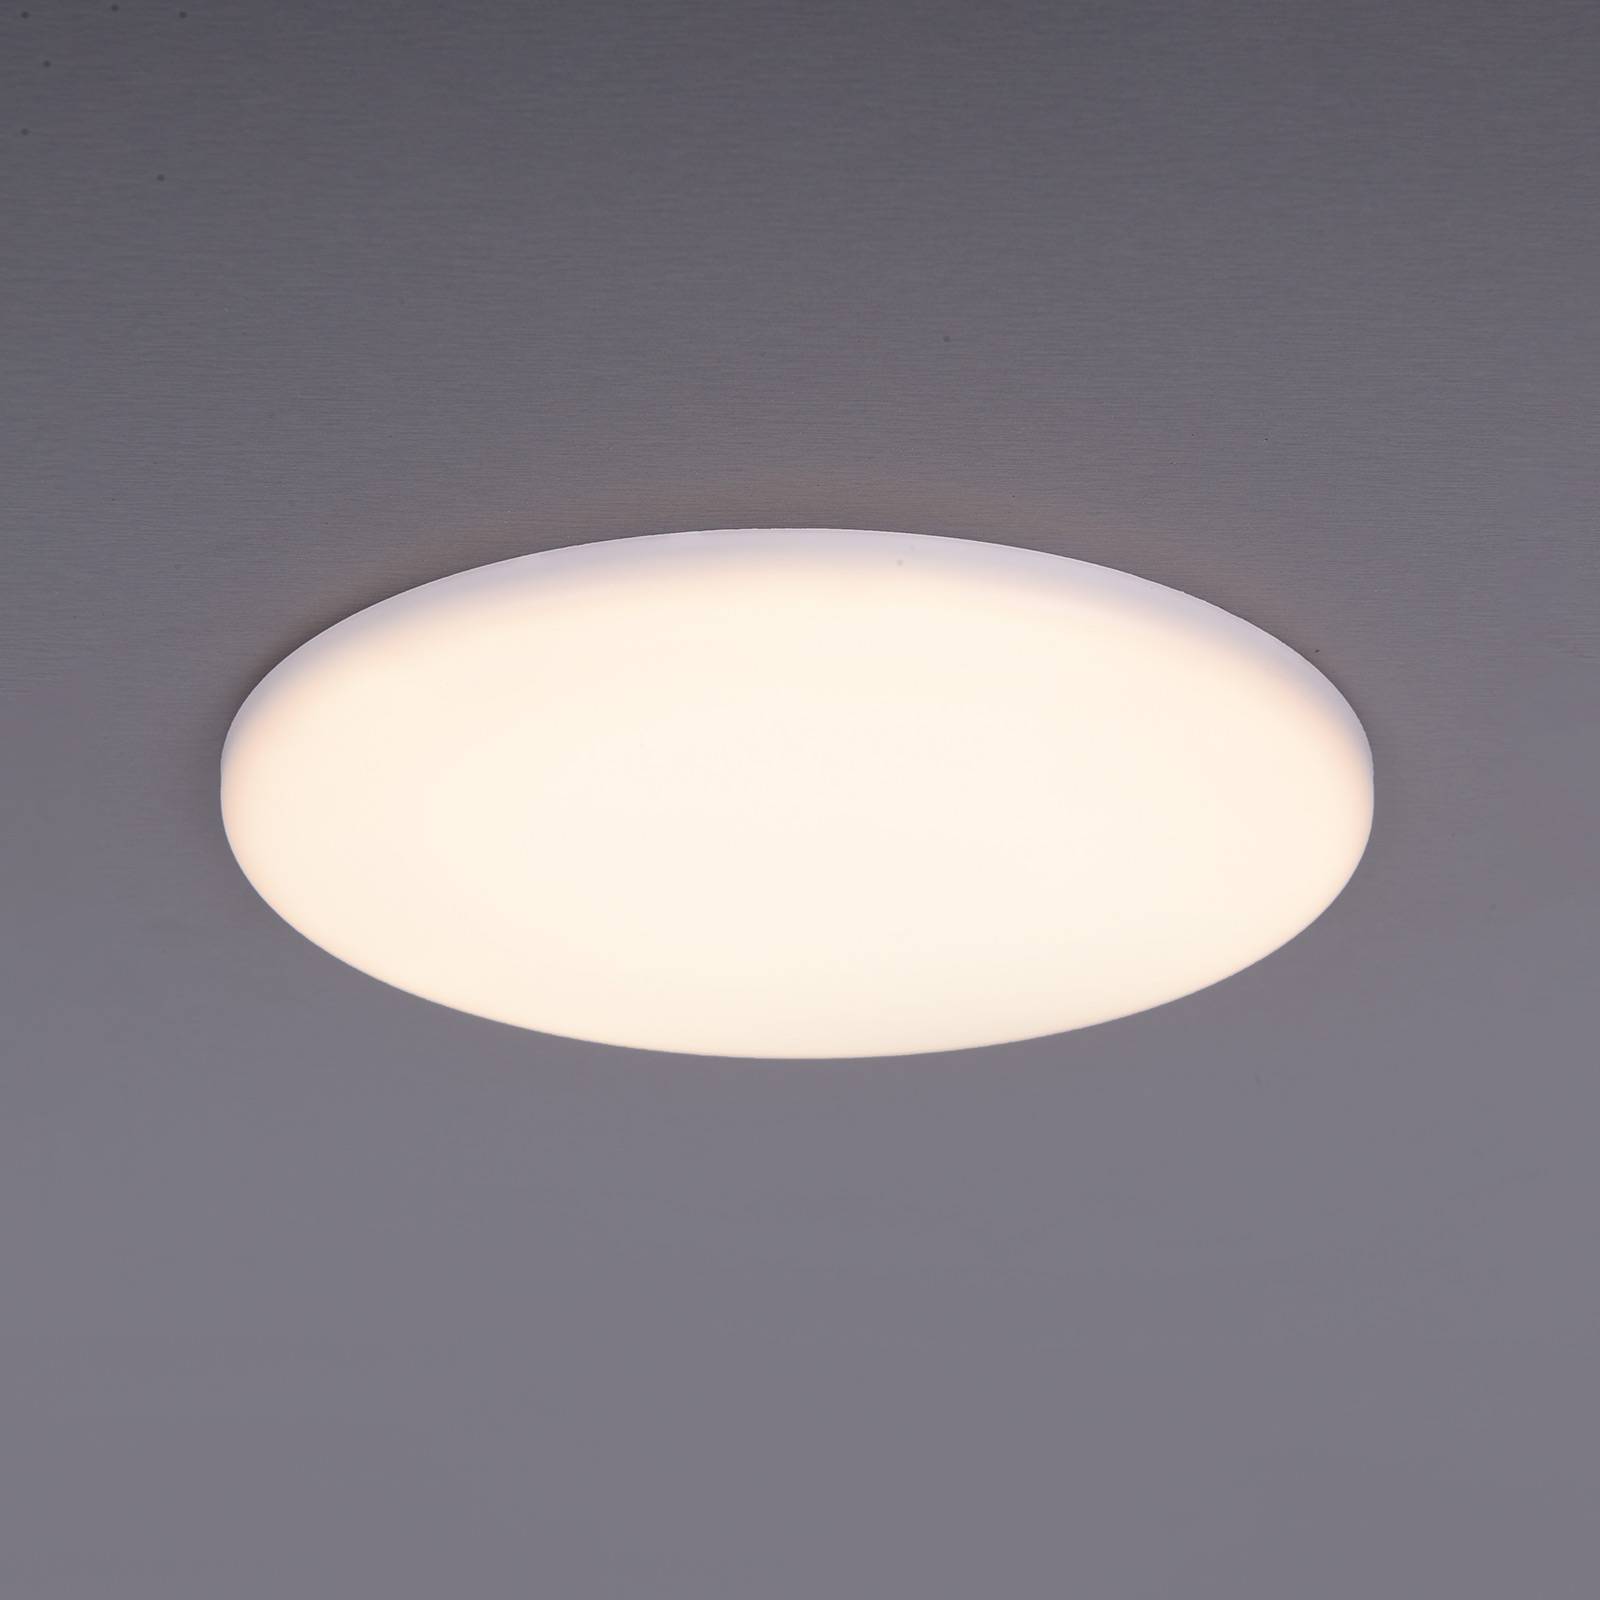 Naeve Leuchten LED-Einbauleuchte Sula, rund, IP66, Ø 15,5 cm